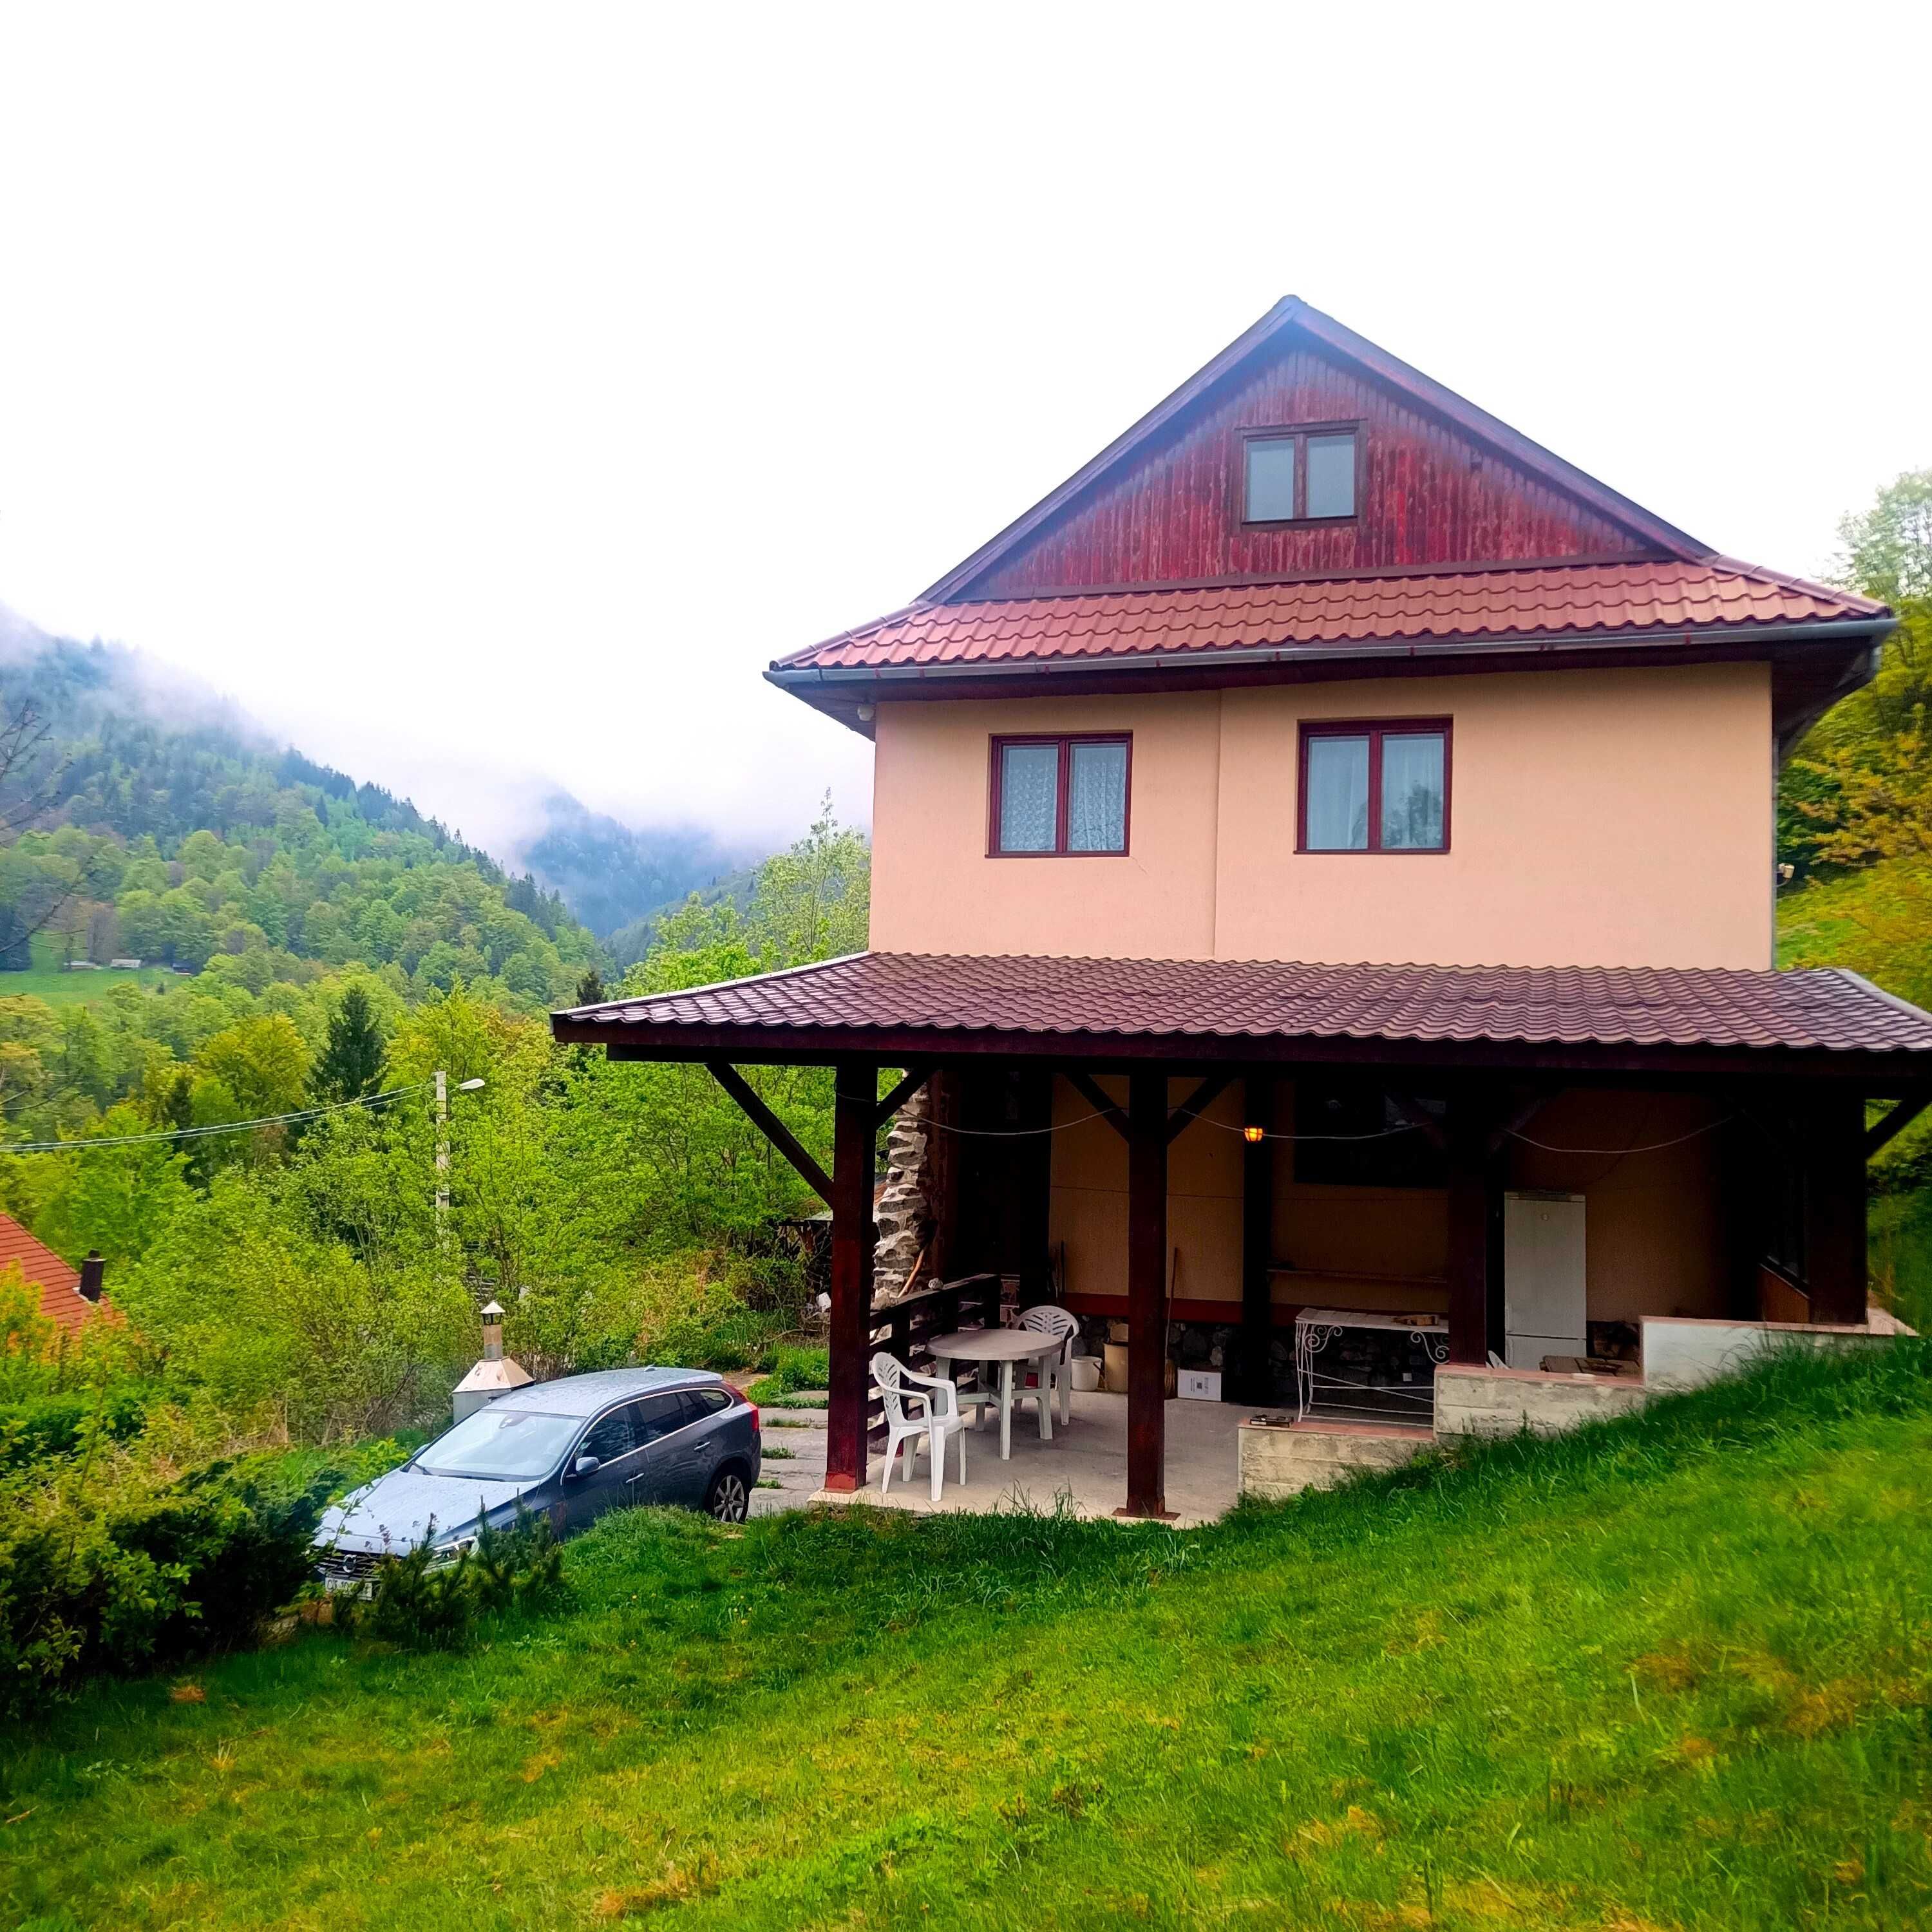 Casă/cabană în Munții Parâng, Petroșani, Valea Jiului 4 camere 2 băi